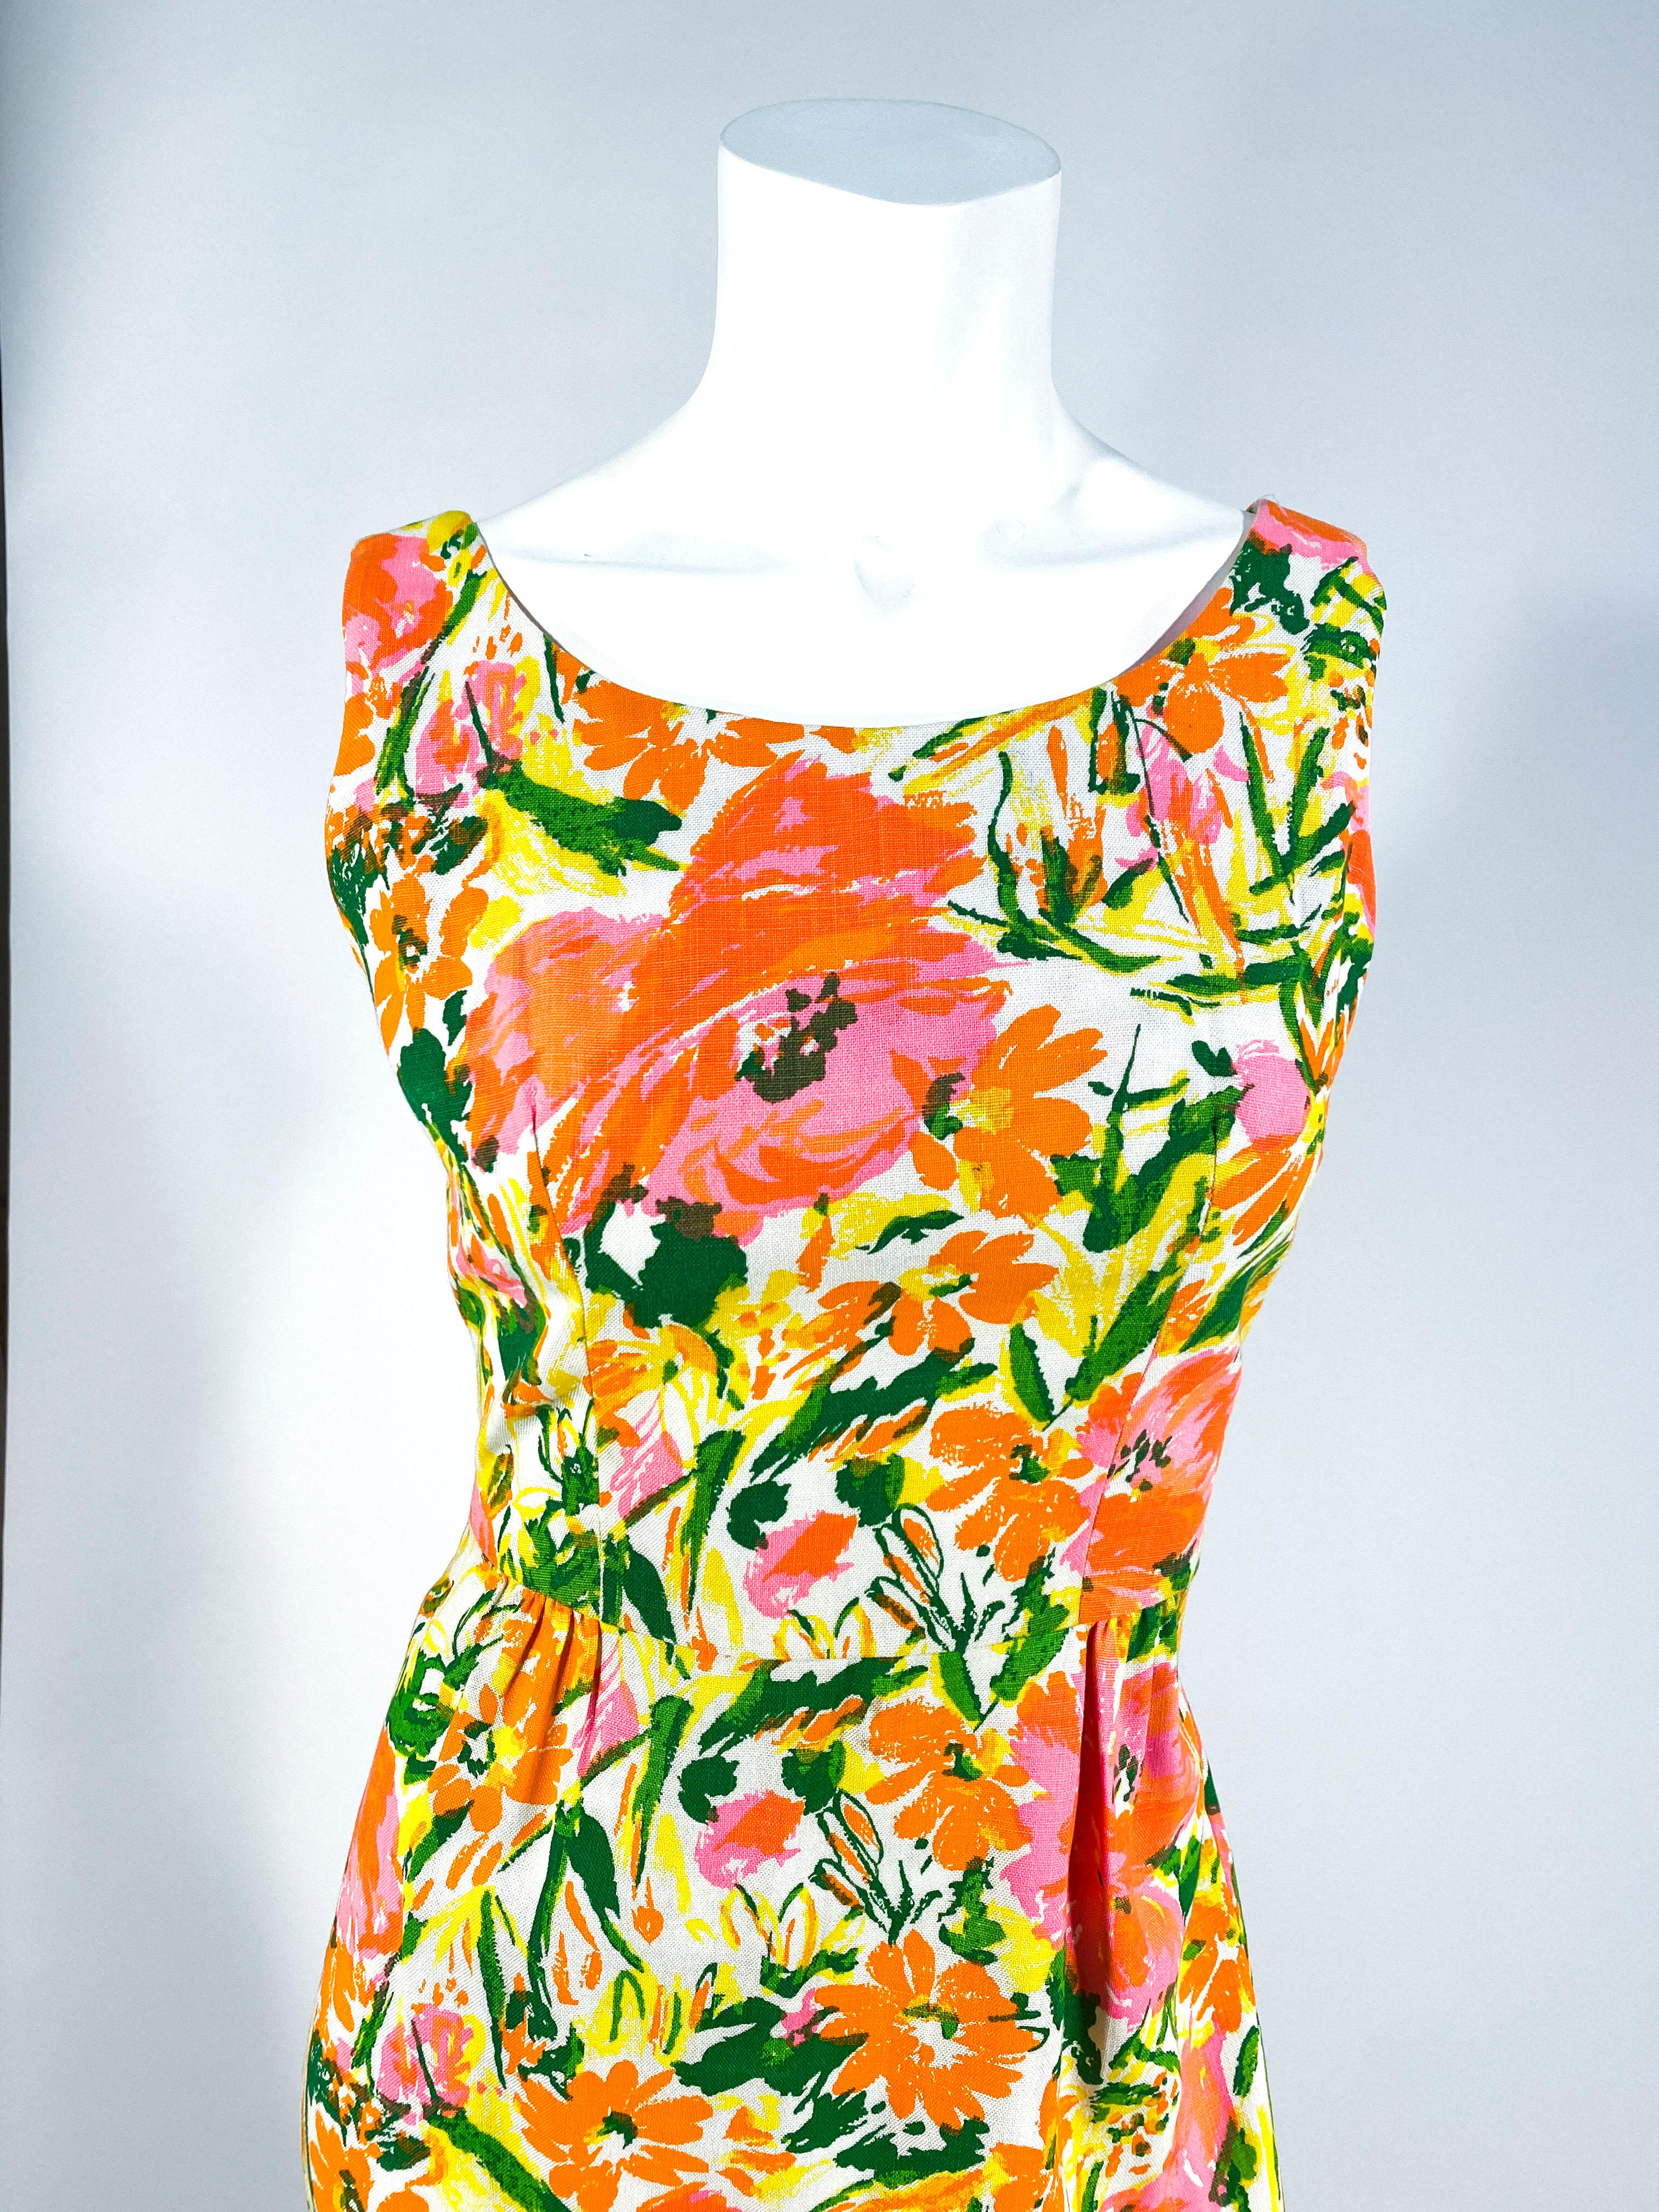 Baumwoll-Tageskleid aus den frühen 1960er Jahren mit abstraktem Neonblumenmuster. Das Mieder läuft in der Taille spitz zu, die mit dem mäßig gefalteten Rock verbunden ist und so eine schöne Silhouette ergibt. Dieses Stück ist ungefüttert und wird